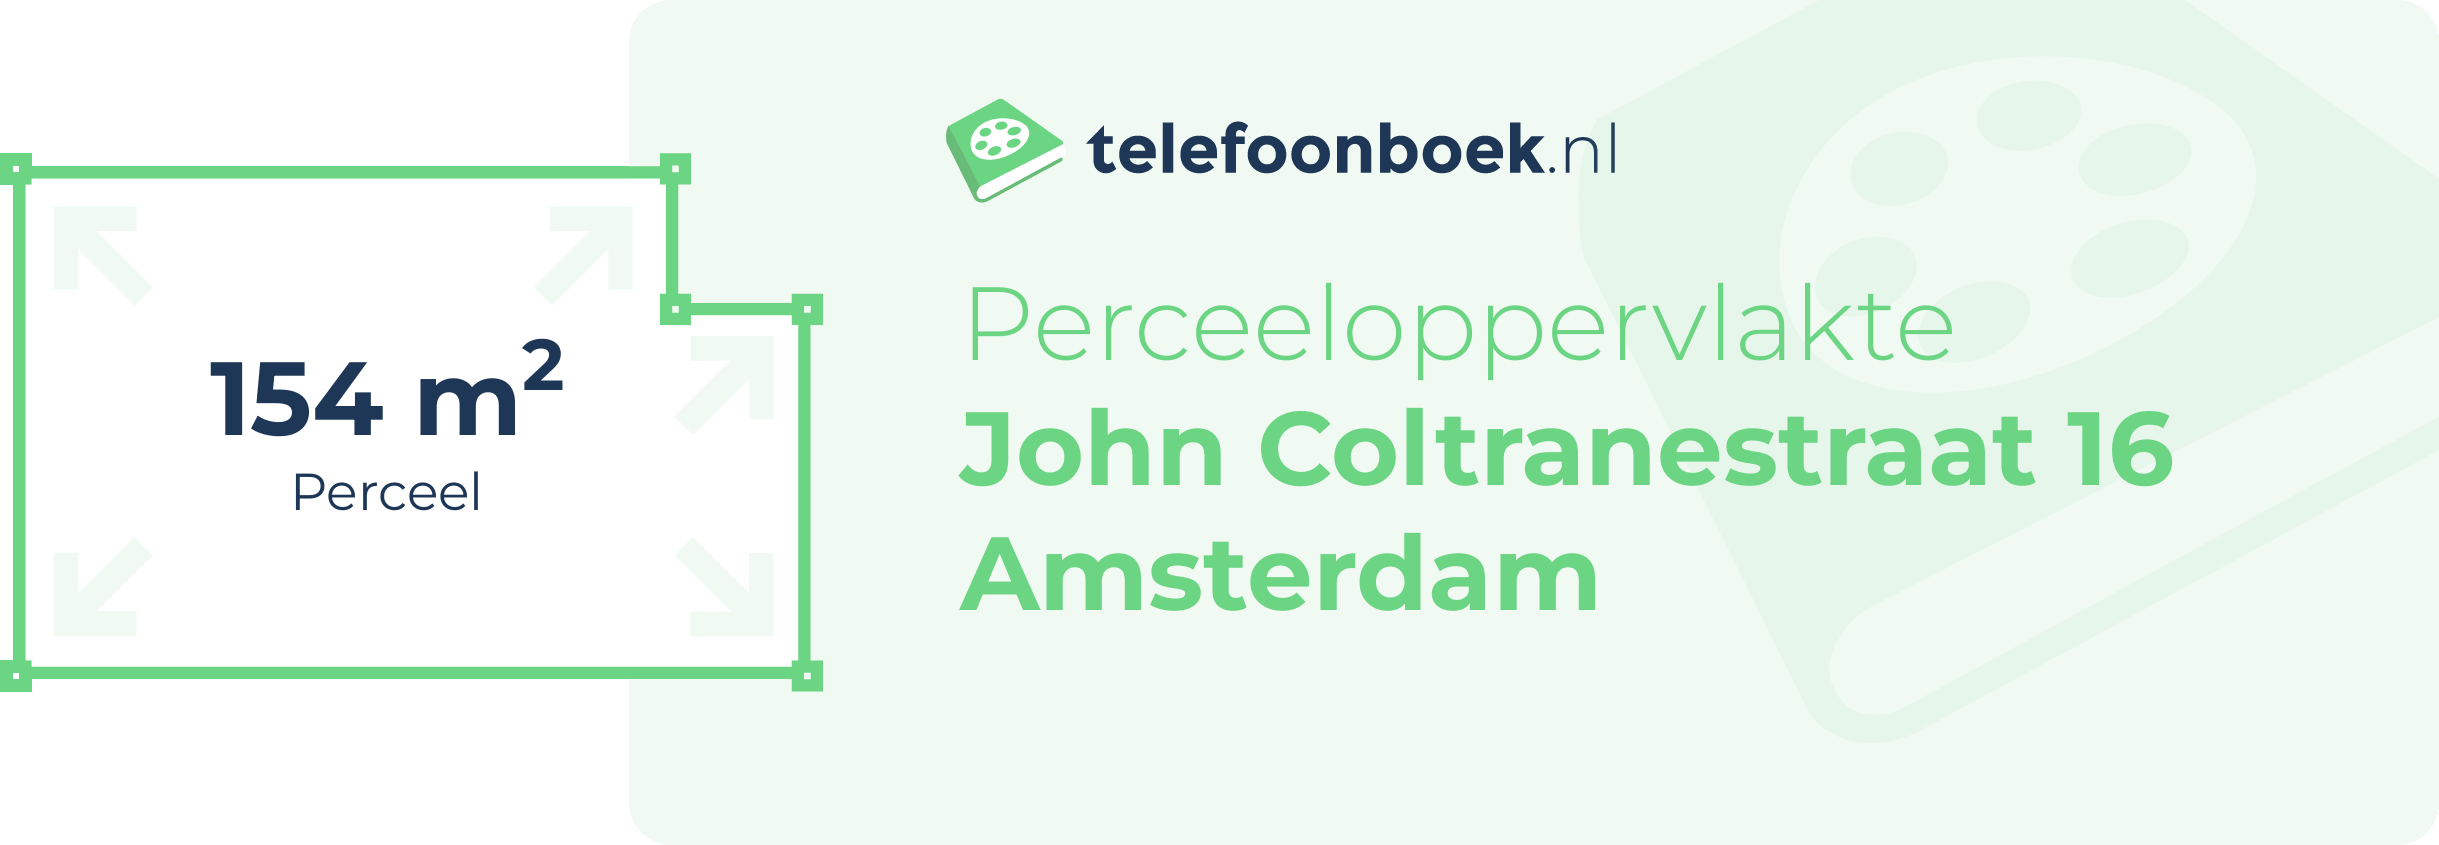 Perceeloppervlakte John Coltranestraat 16 Amsterdam